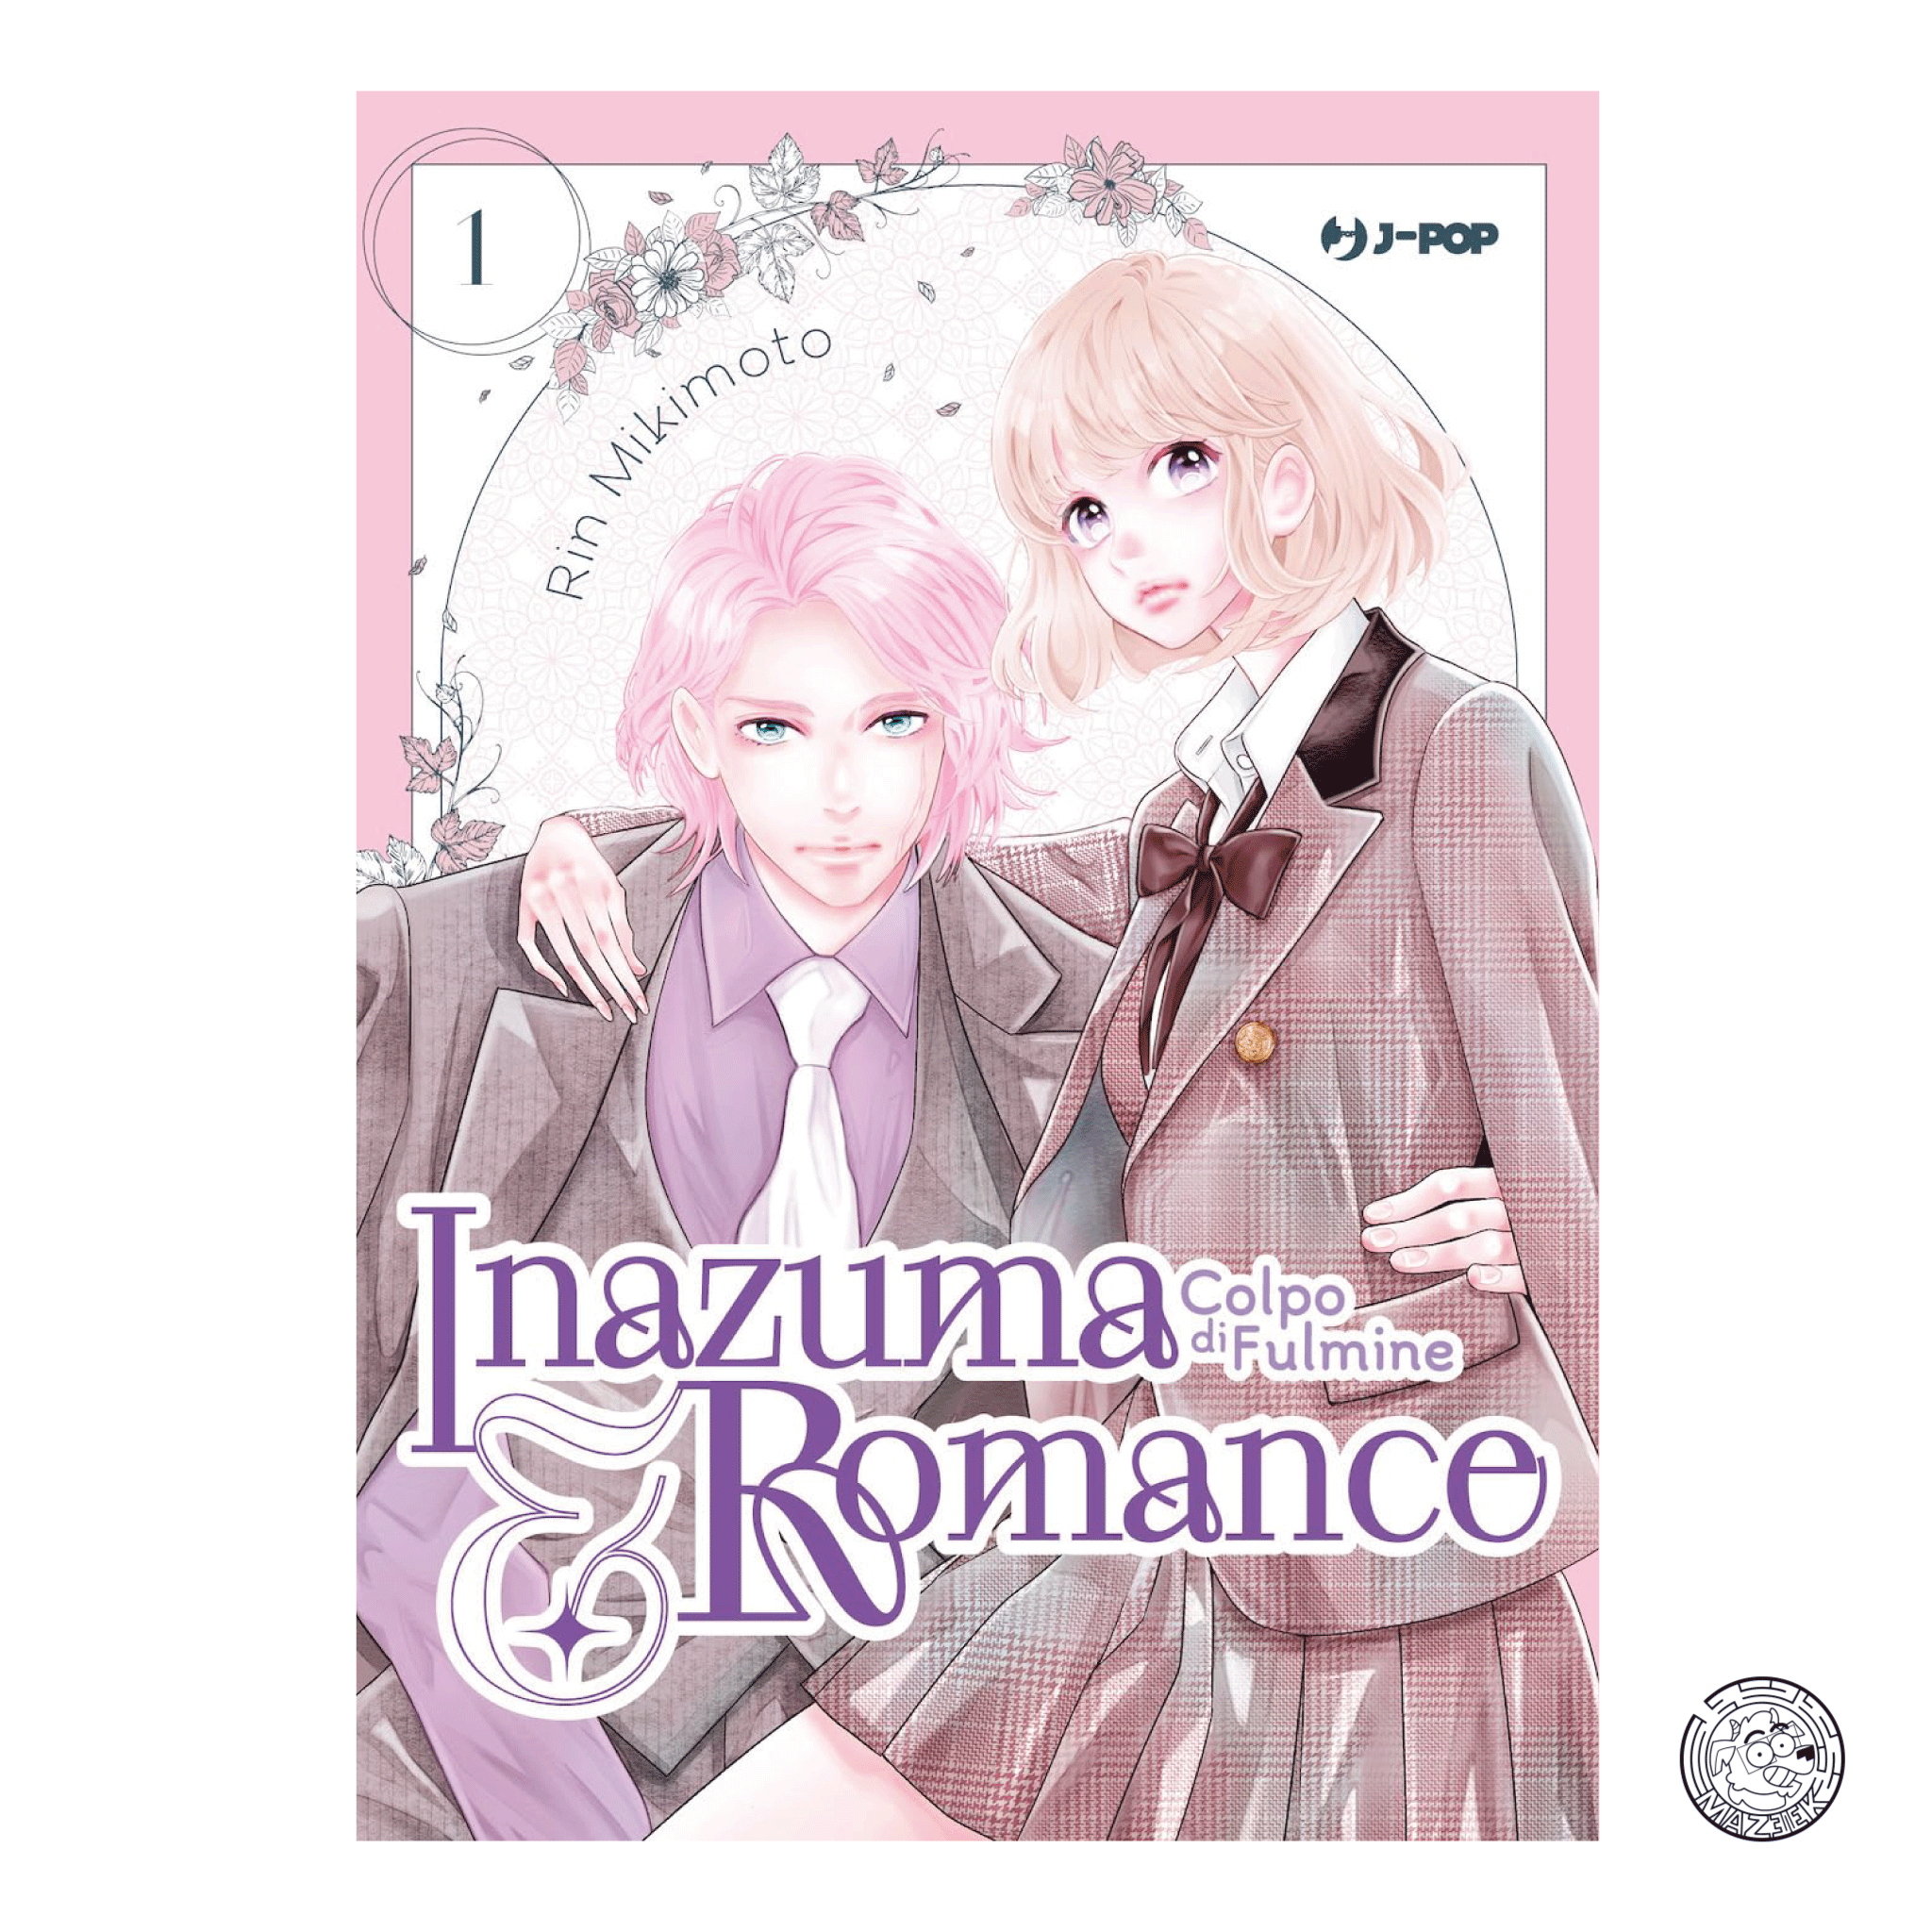 Inazuma & Romance: Colpo di Fulmine 01